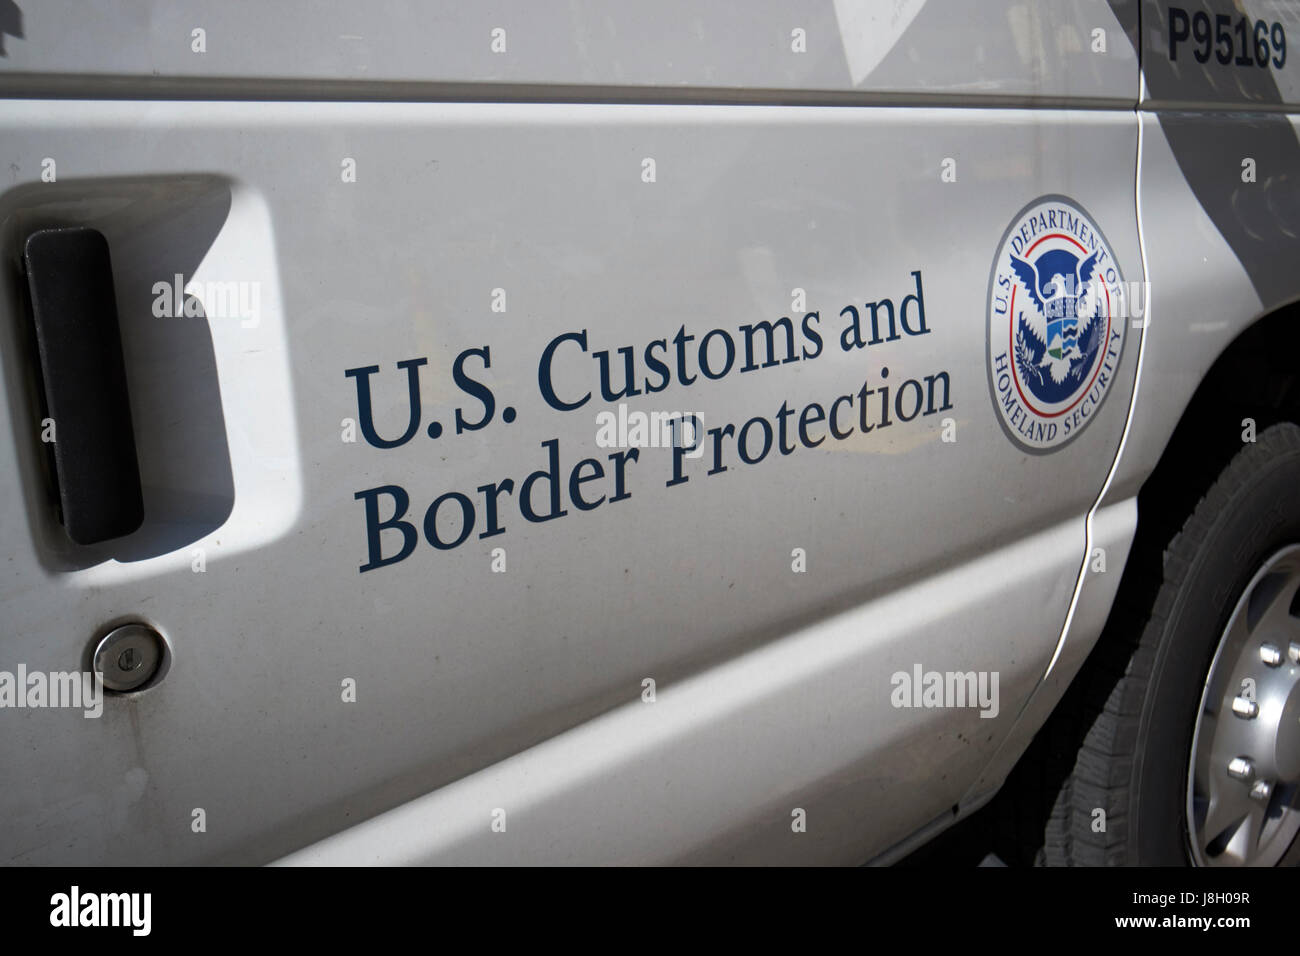 Ministère de la sécurité intérieure de la U.S. Customs and Border Protection véhicule service crest et le logo de la ville de New York USA Banque D'Images